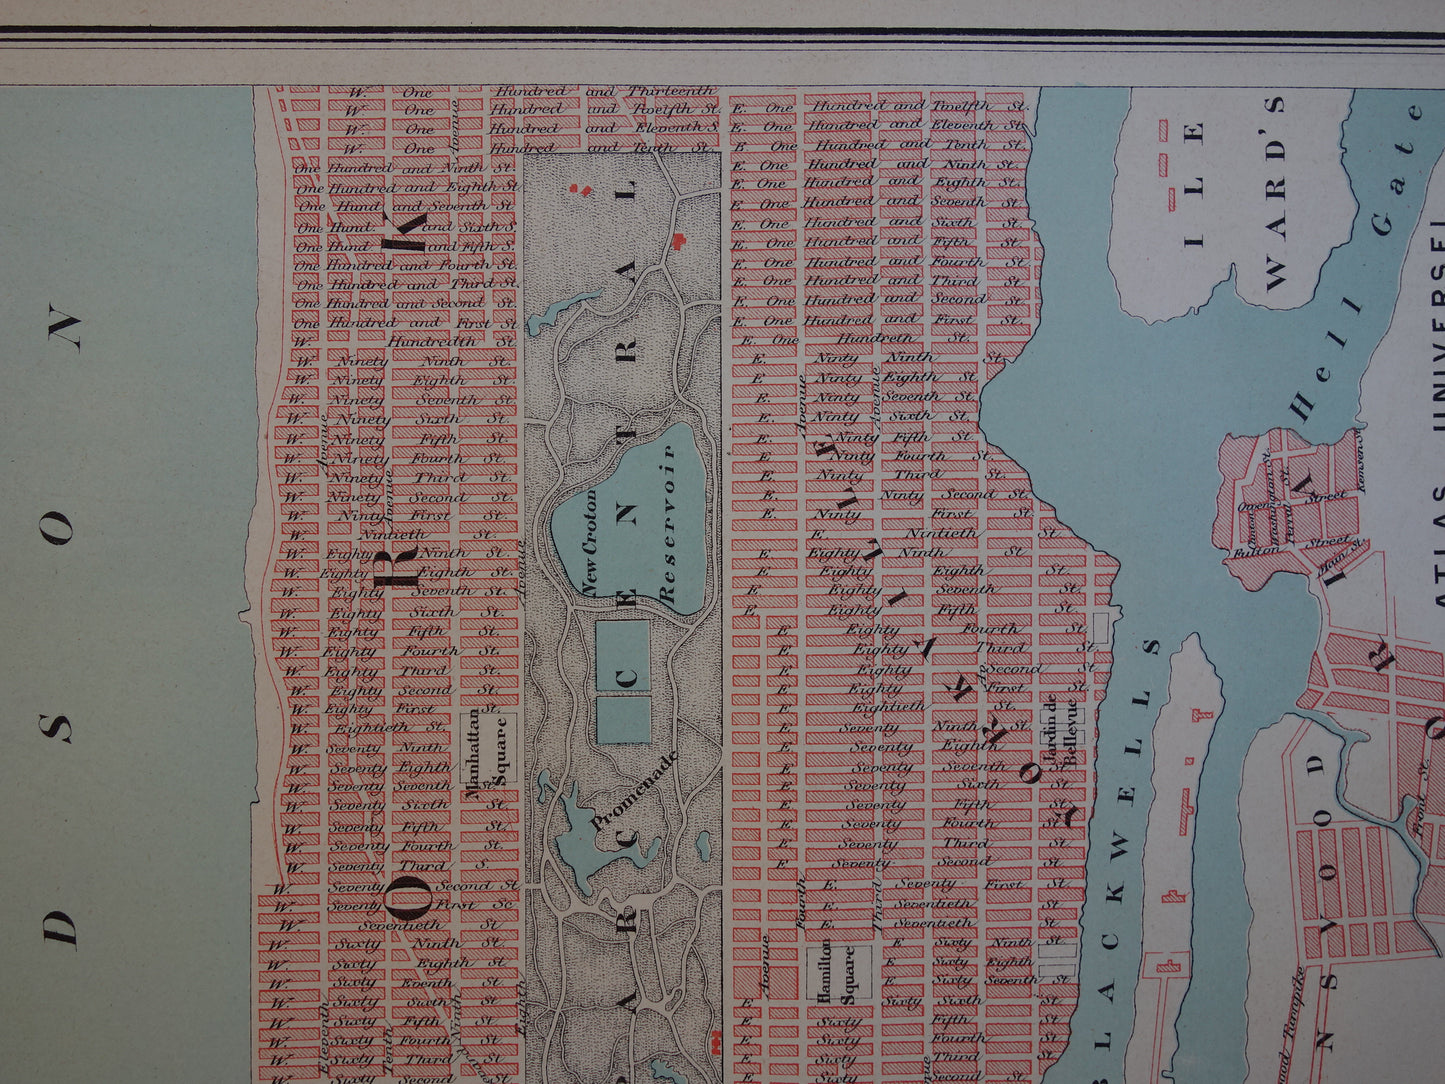 New York oude kaart van New York City uit 1877 originele antieke plattegrond vintage kaarten